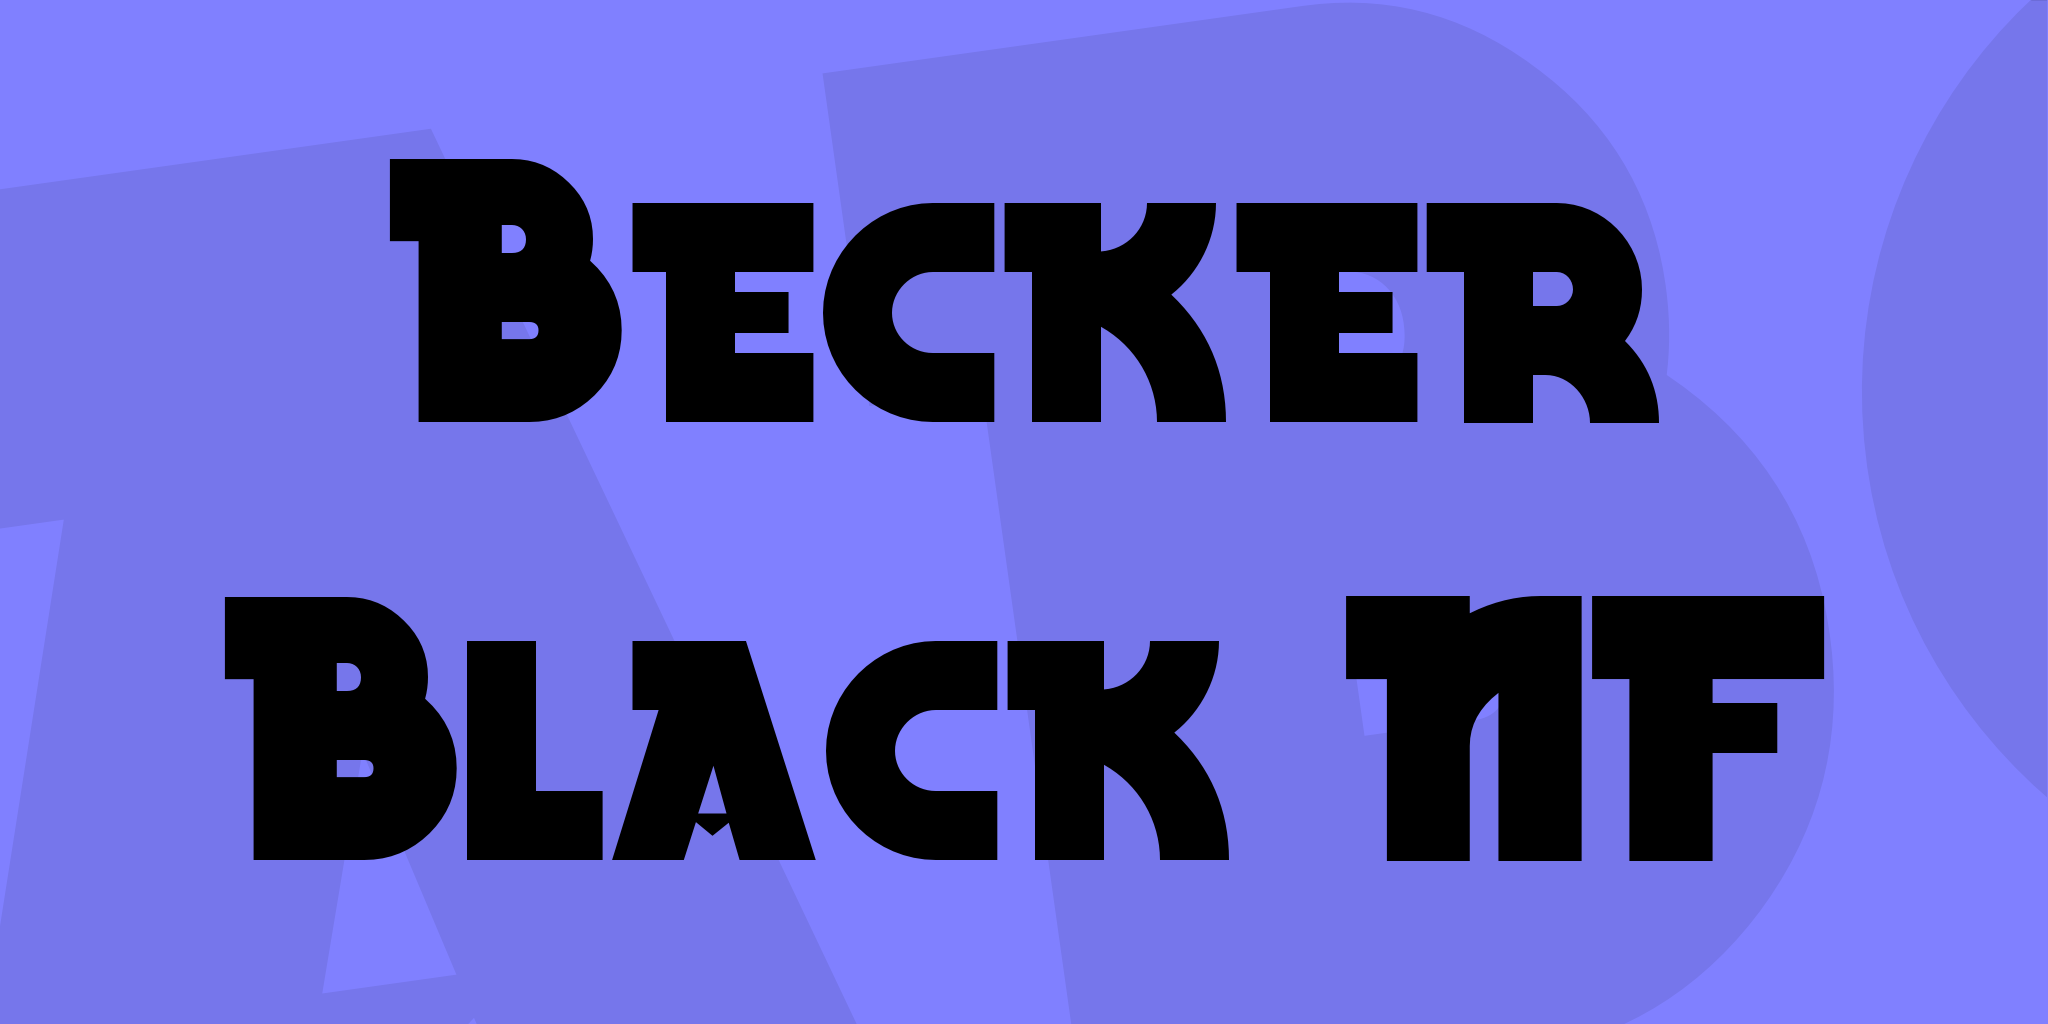 Becker Black Nf